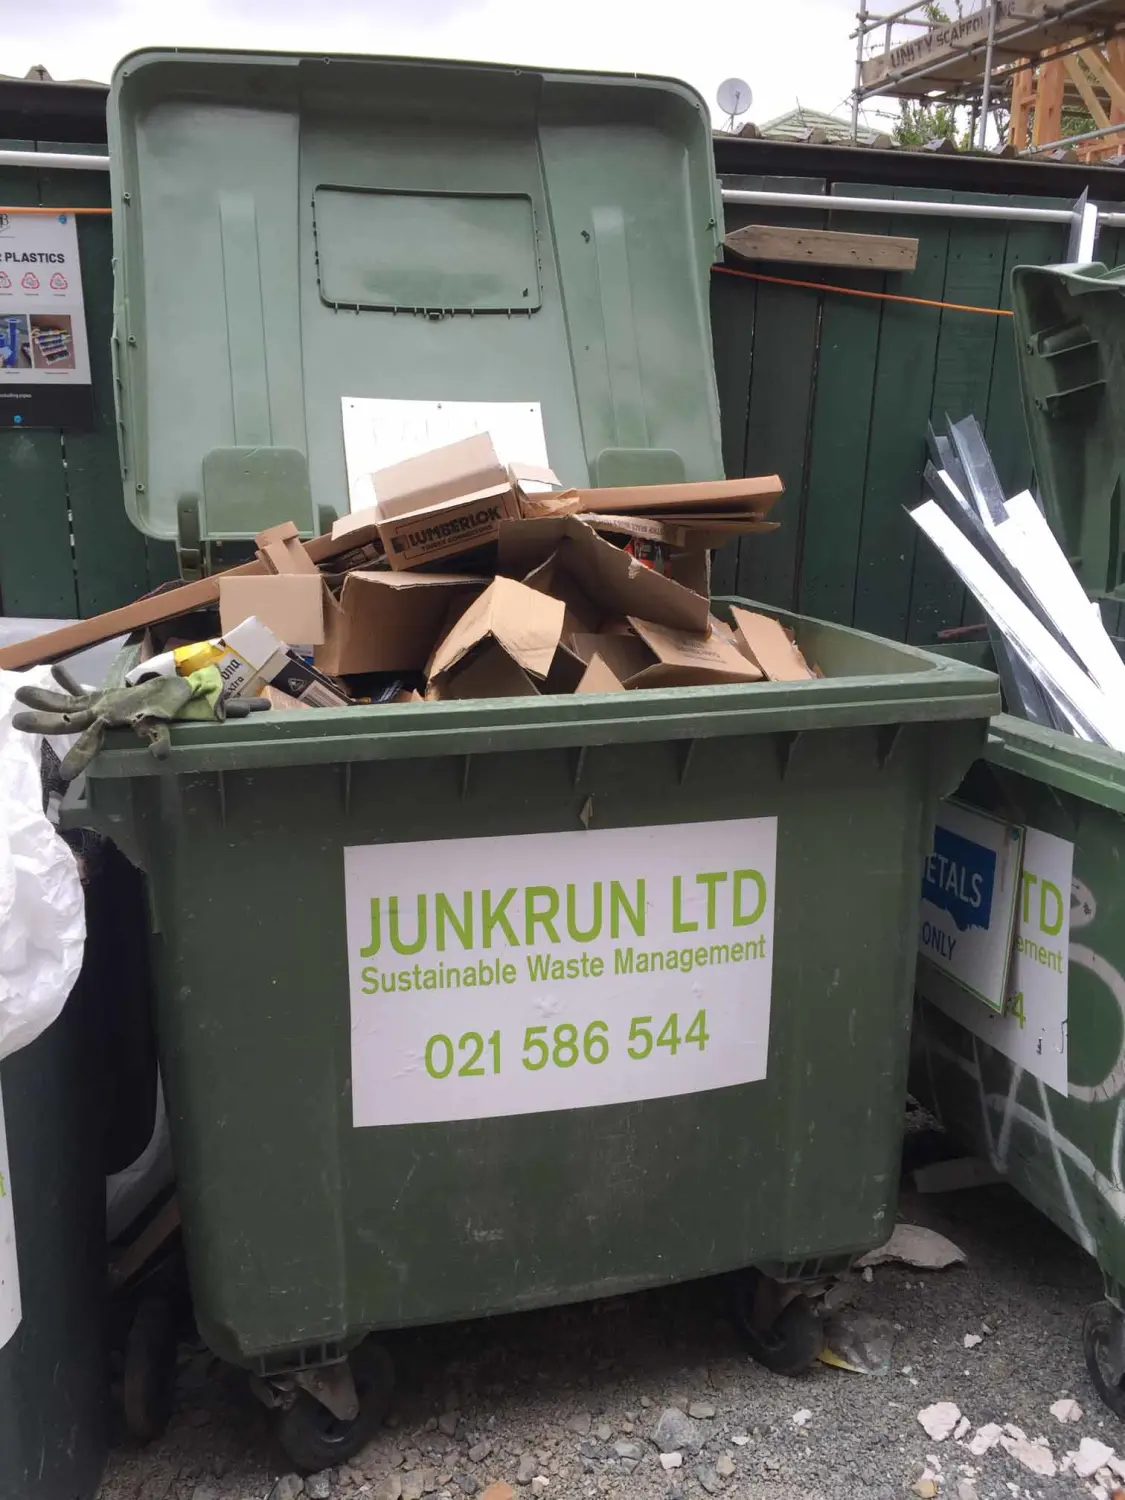 Junk Run skip bin on an Auckland construction site.